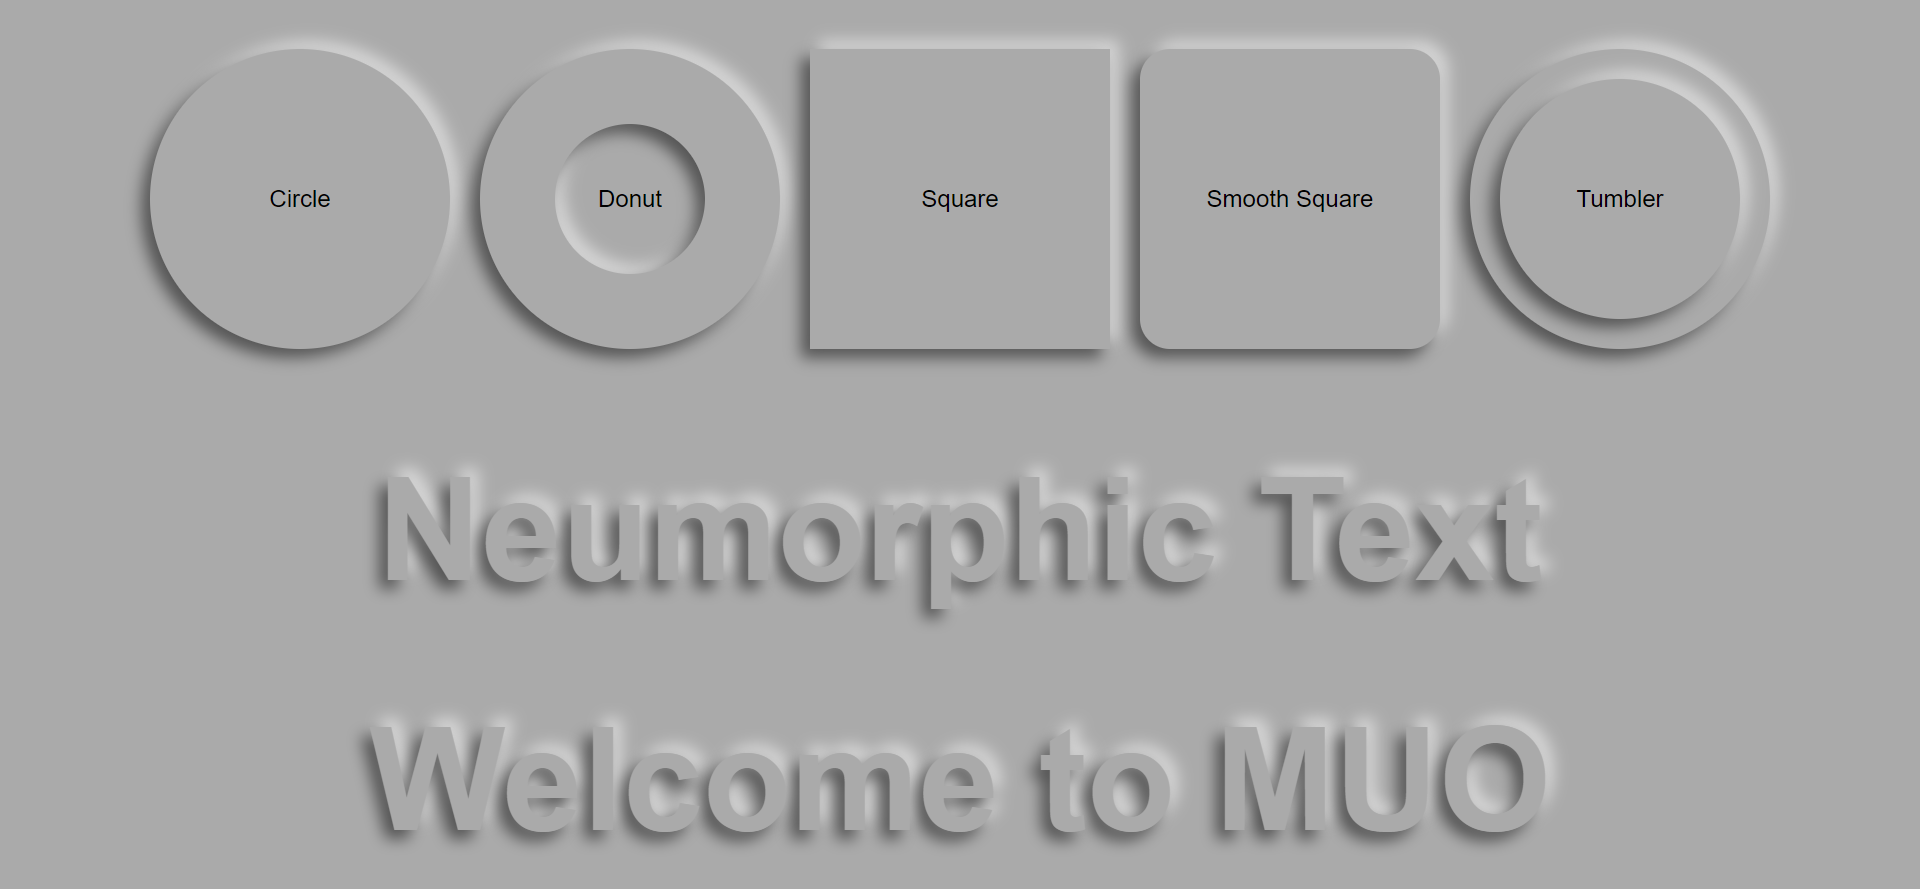 Neumorphic Text and Shapes - 5 componenti di progettazione neumorfica in HTML, CSS e JavaScript